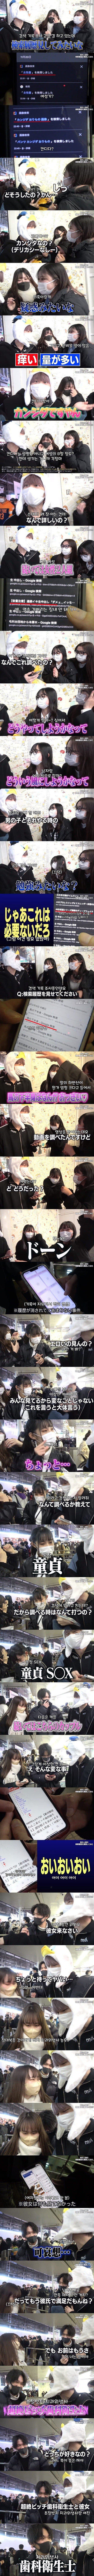 일본 남녀의 스마트폰 검색 기록